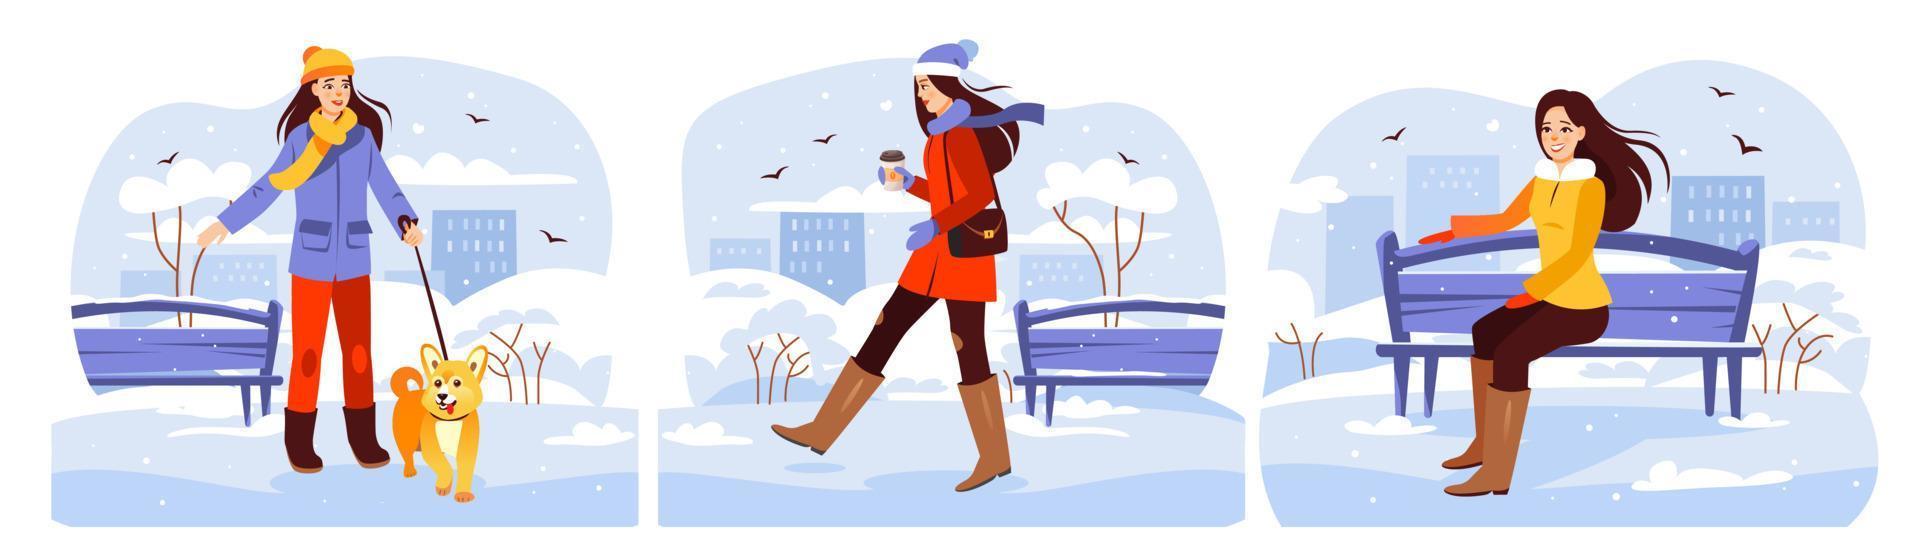 parque de invierno un grupo de chicas jóvenes caminando en el parque en invierno. la chica bebe café, pasea al perro, sentada en un banco. ilustración vectorial de dibujos animados vector